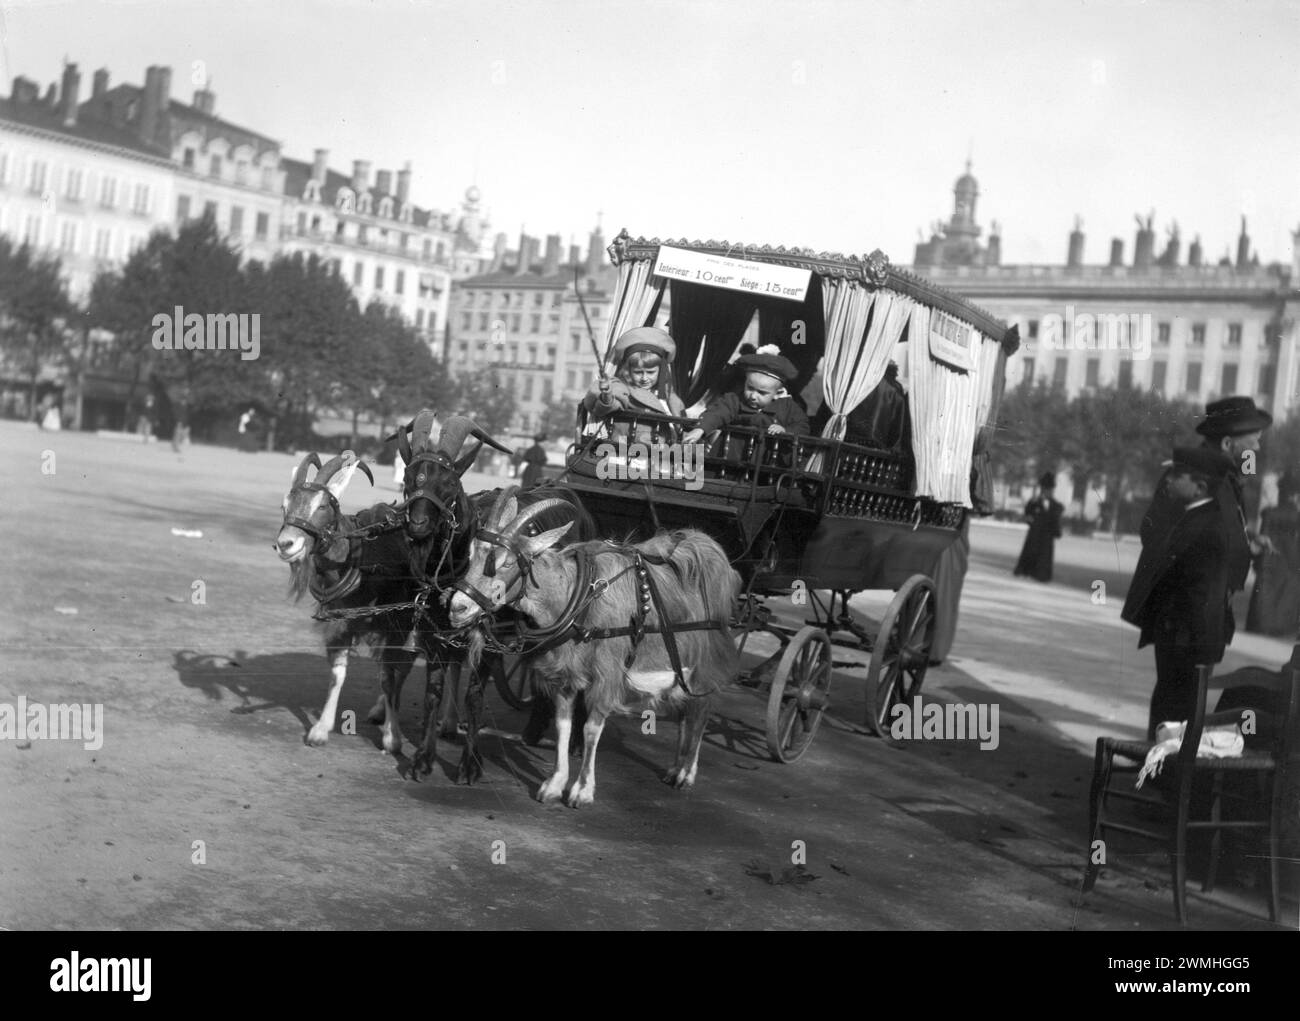 Une calèche tirée par des chevaux avec des enfants traverse un lieu de la ville lyonnaise, au début du XXe siècle. Vieille photo numérisée à partir de plaques de verre. Banque D'Images